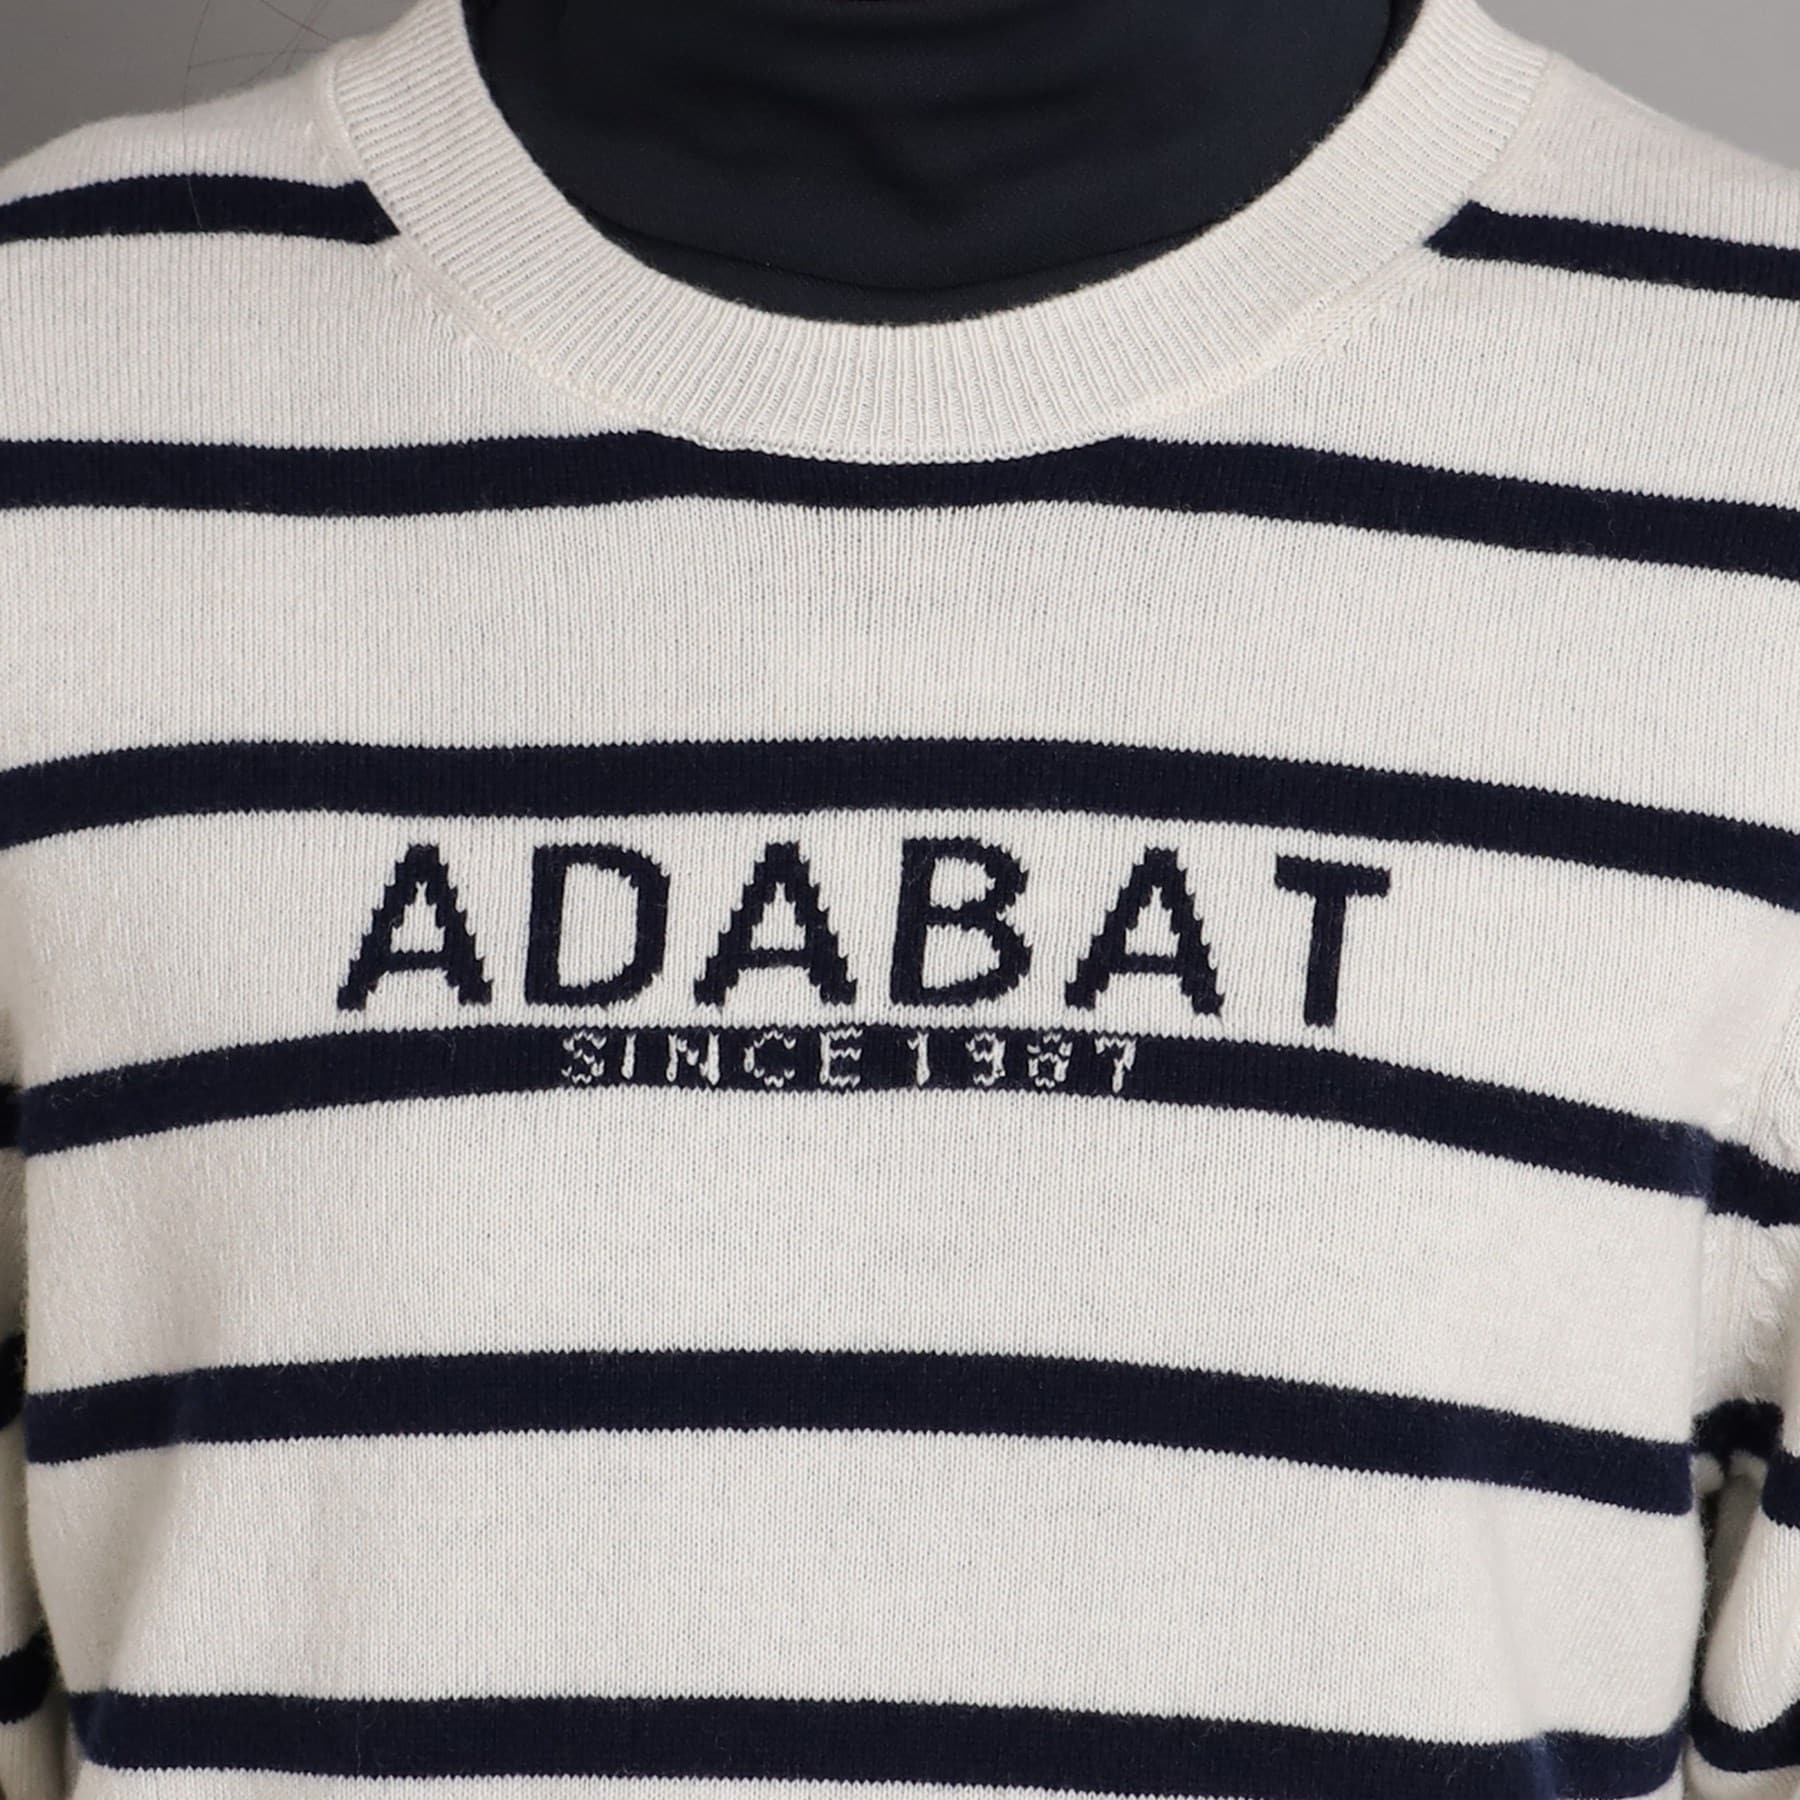 アダバット(レディース)(adabat(Ladies))のロゴデザイン クルーネックセーター31